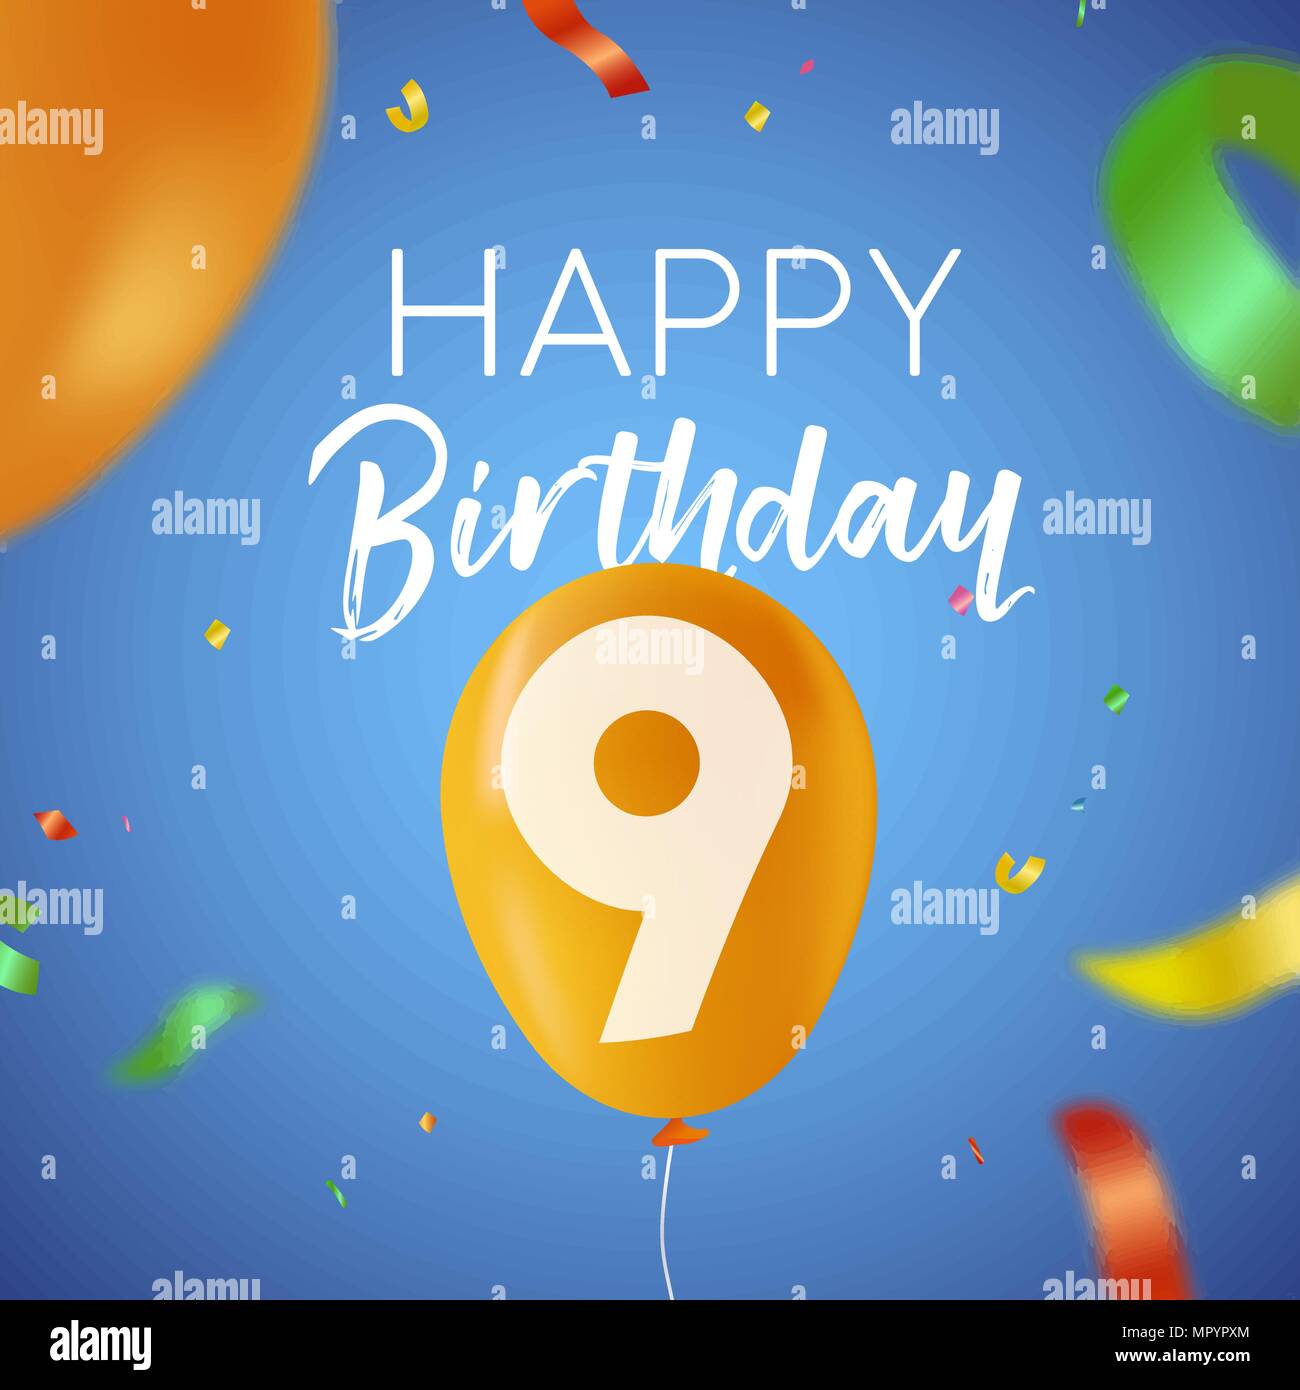 Happy Birthday 9 neun Jahre Spaß Design mit Ballon Anzahl und bunte Konfetti Dekoration. Ideal für Party Einladung oder Grußkarte. EPS 10 Vektor Stock Vektor